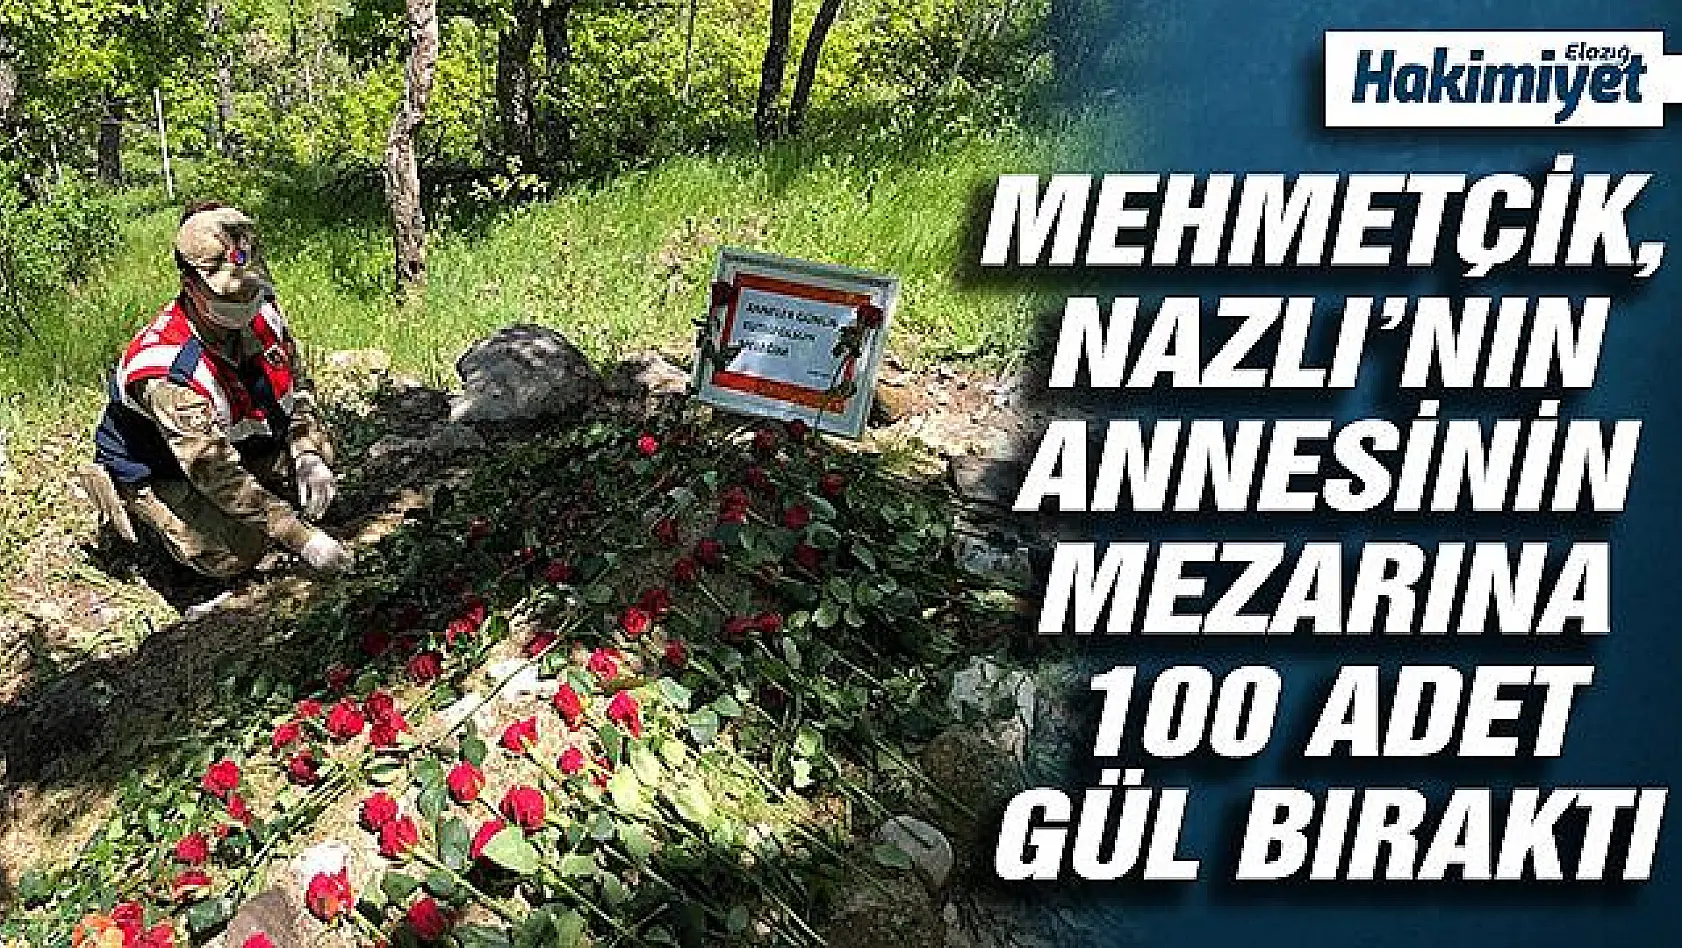 Kızı talep etti, Mehmetçik kabri güllerle donatıp gönüllere dokundu